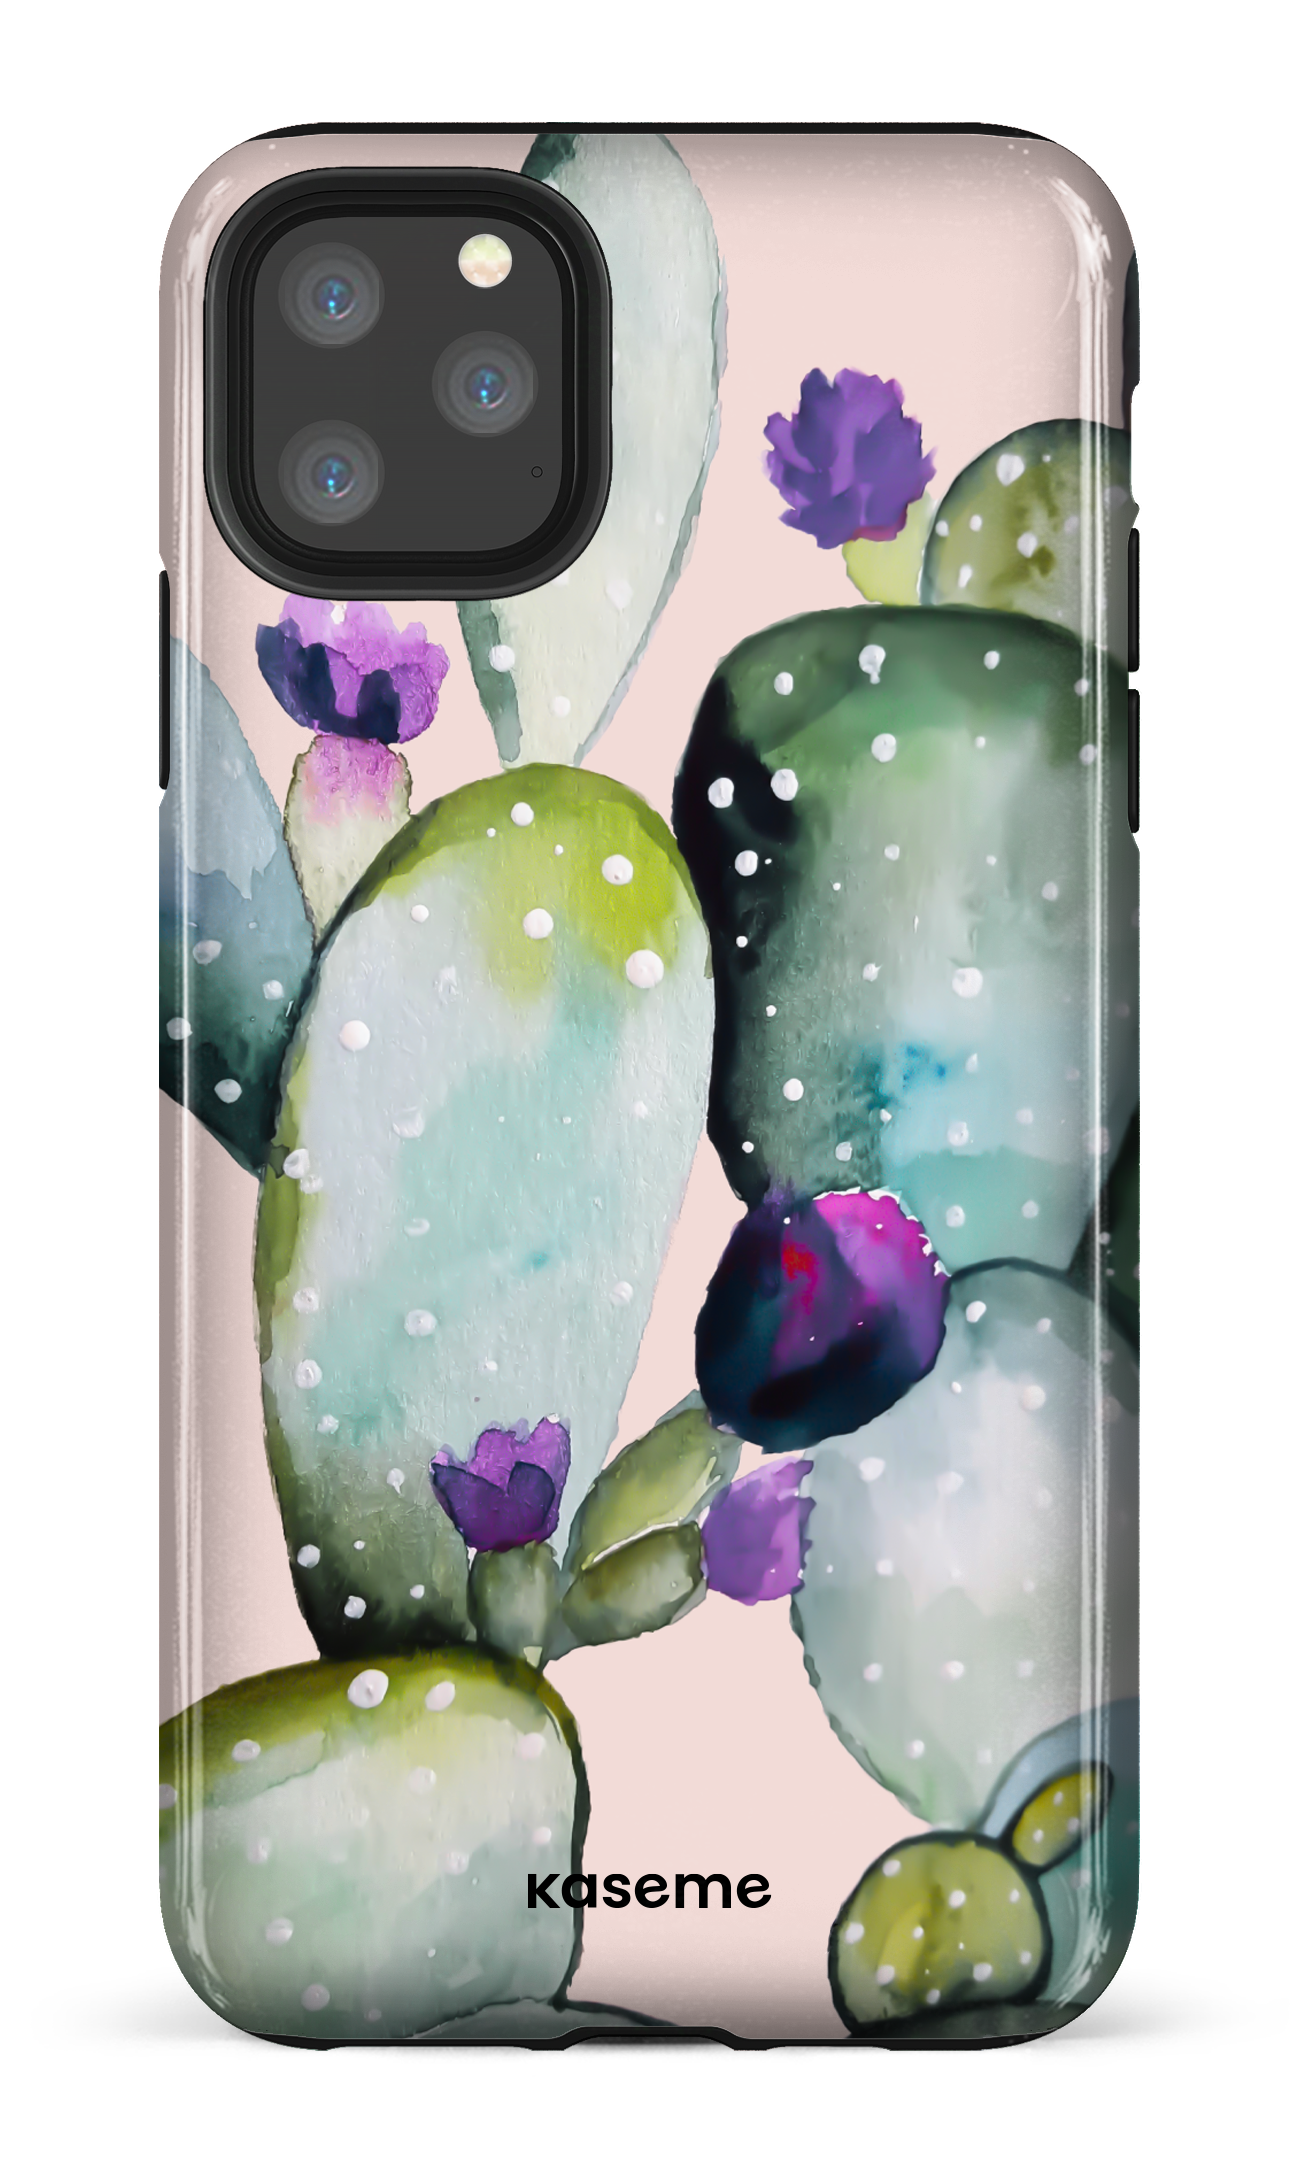 Cactus Flower - iPhone 11 Pro Max